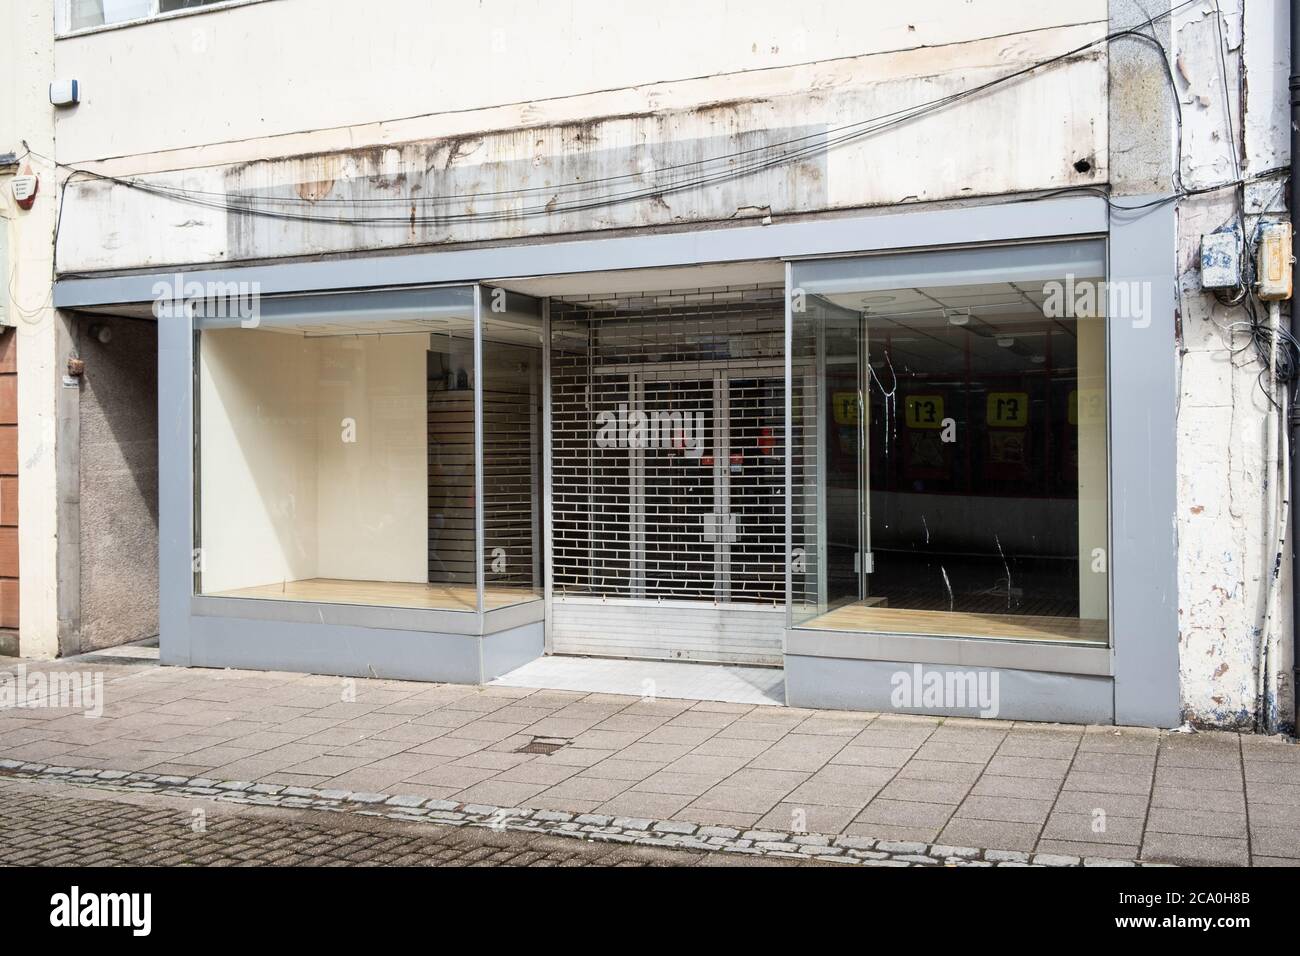 Das Schreibwarengeschäft Ryman in Dumfries, Schottland, schloss nach fast 25 Jahren in der Stadt. Das Geschäft wurde wegen 19 geschlossen, konnte aber nicht wieder geöffnet werden. Stockfoto